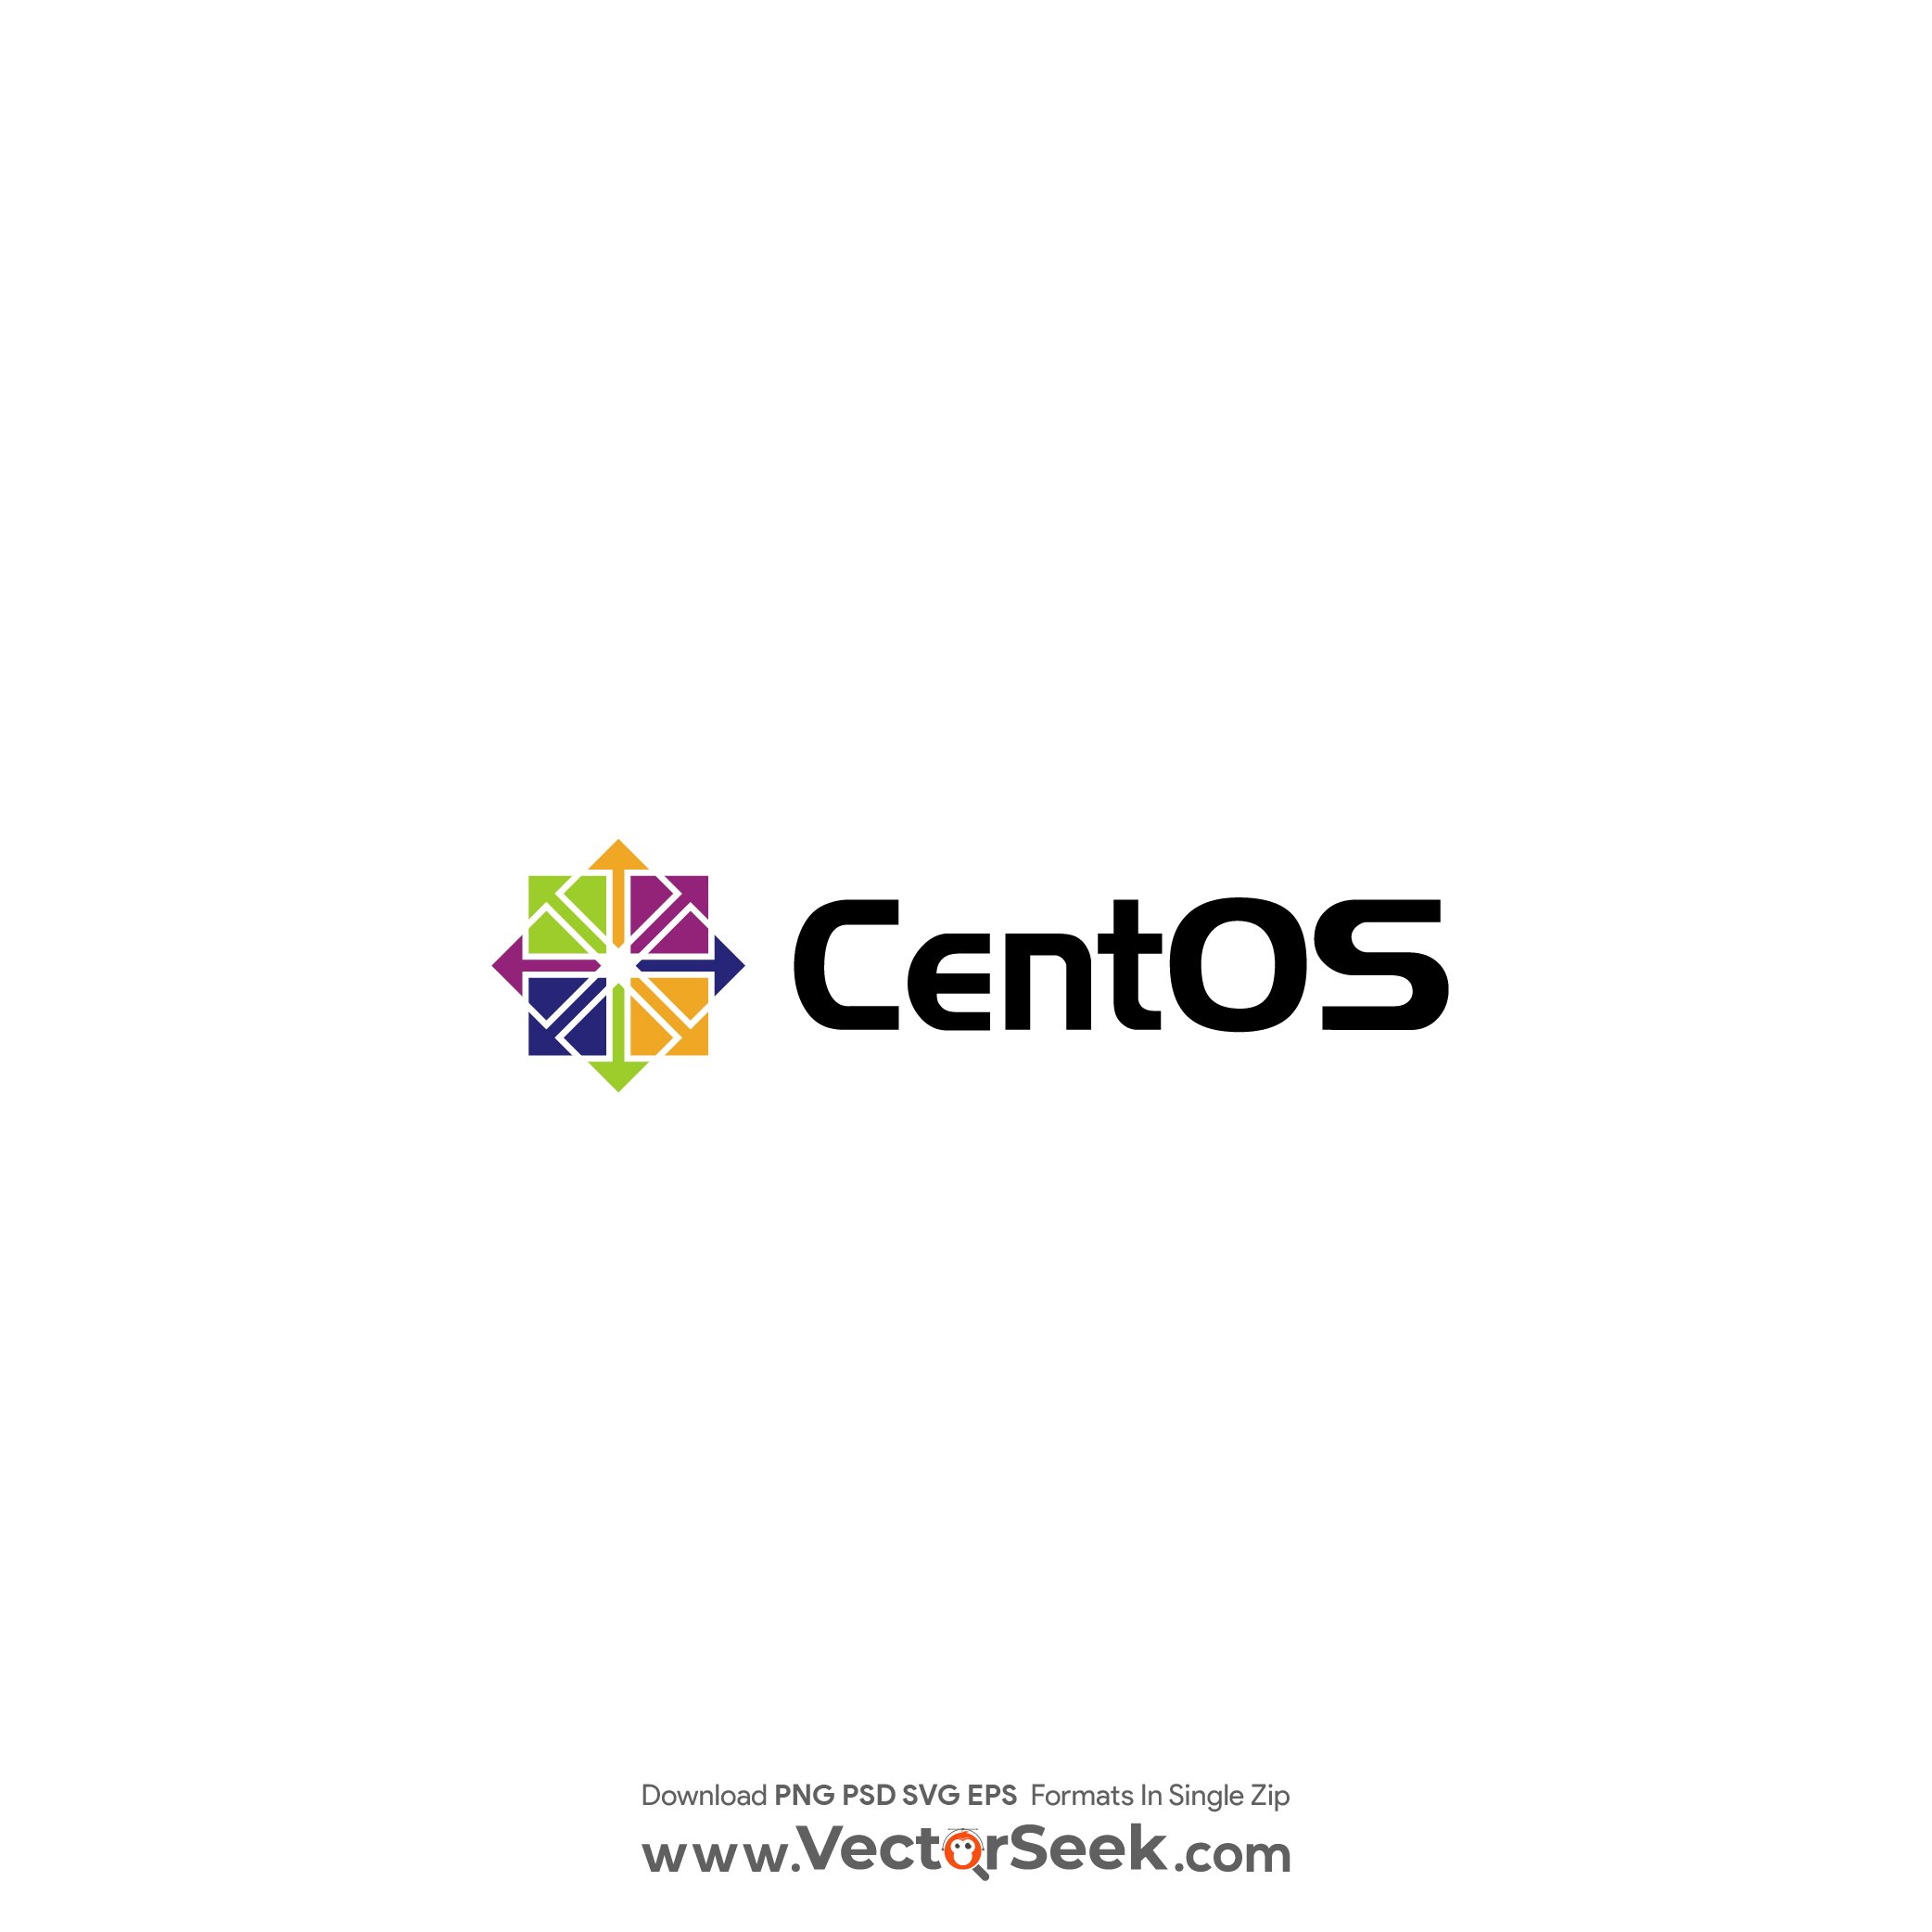 CentOS Logo Vector